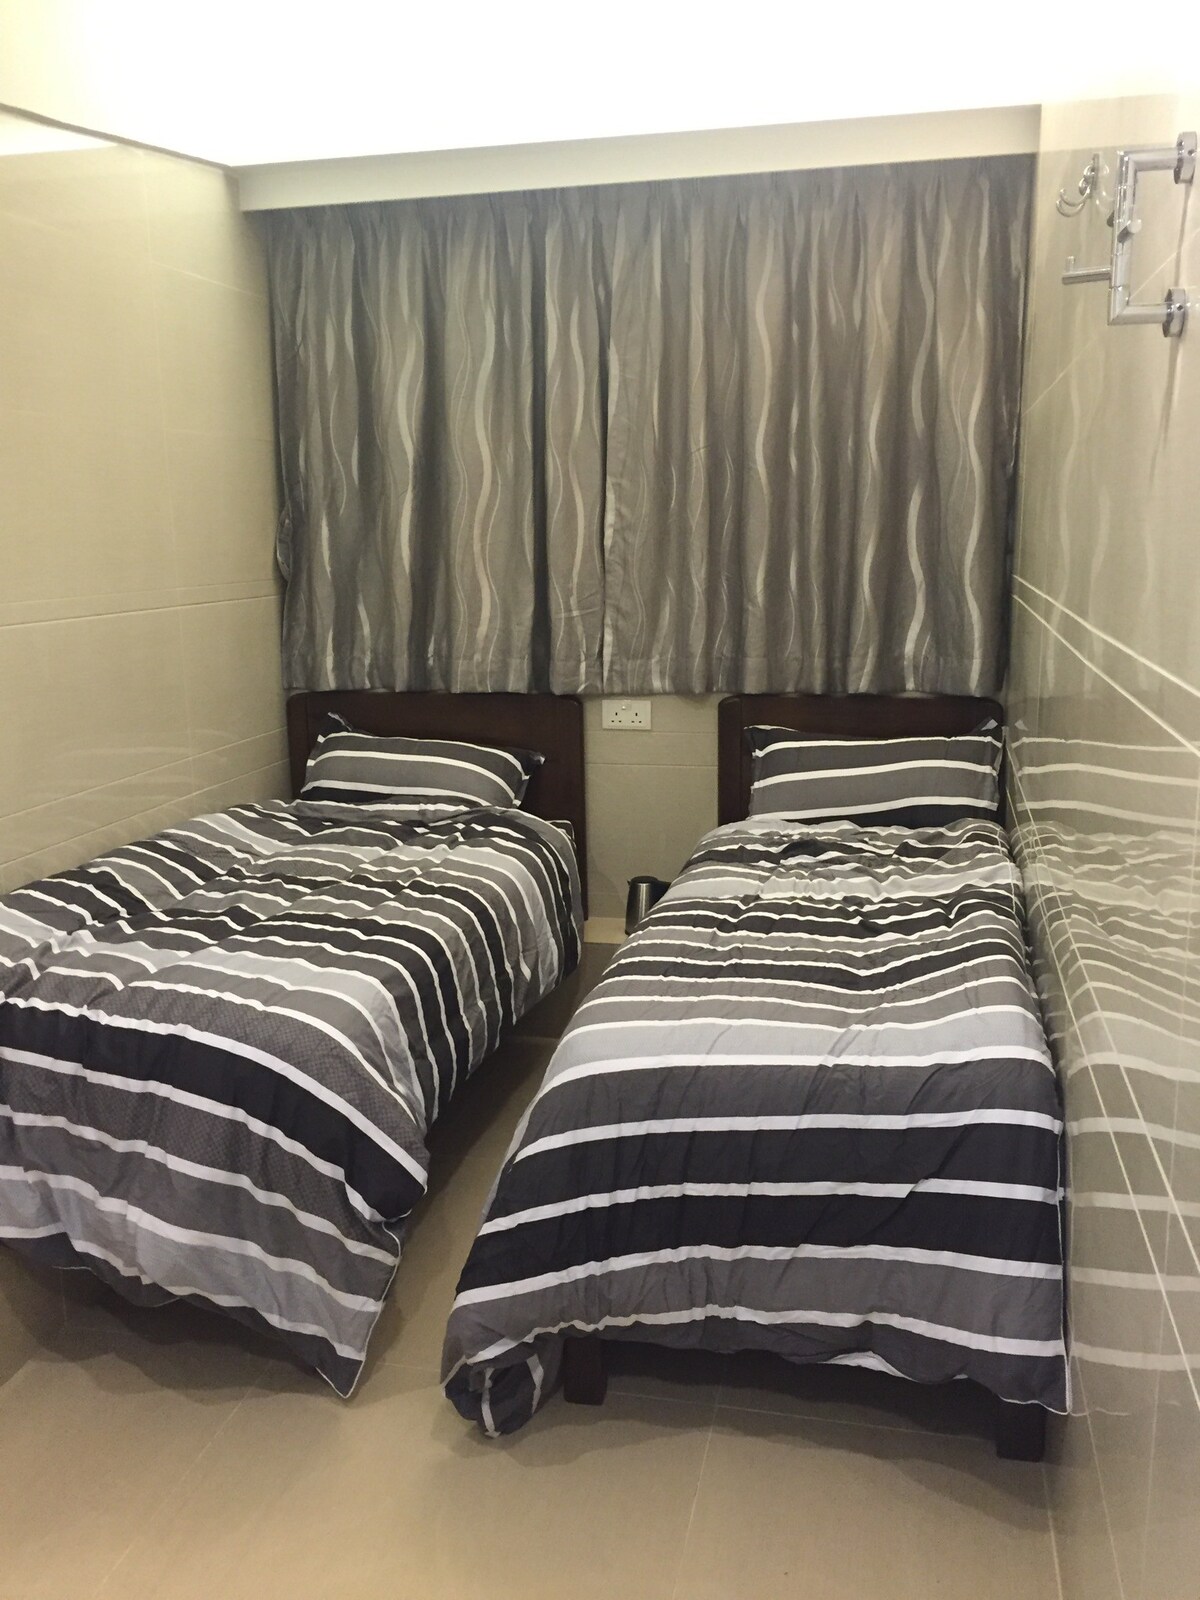 5 號房) 雙單人床,獨立洗手間